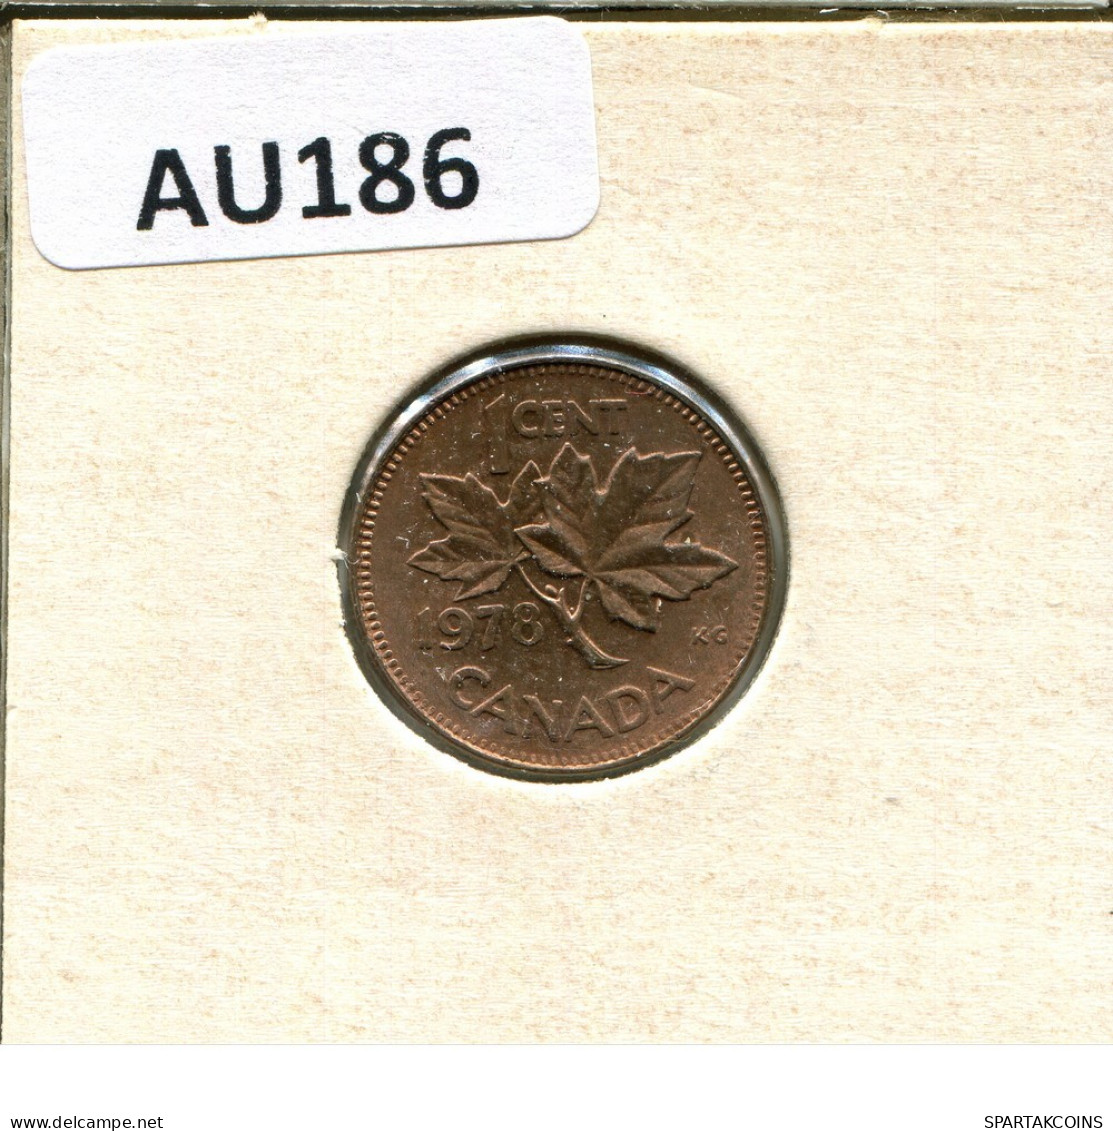 1 CENT 1978 CANADA Moneda #AU186.E.A - Canada